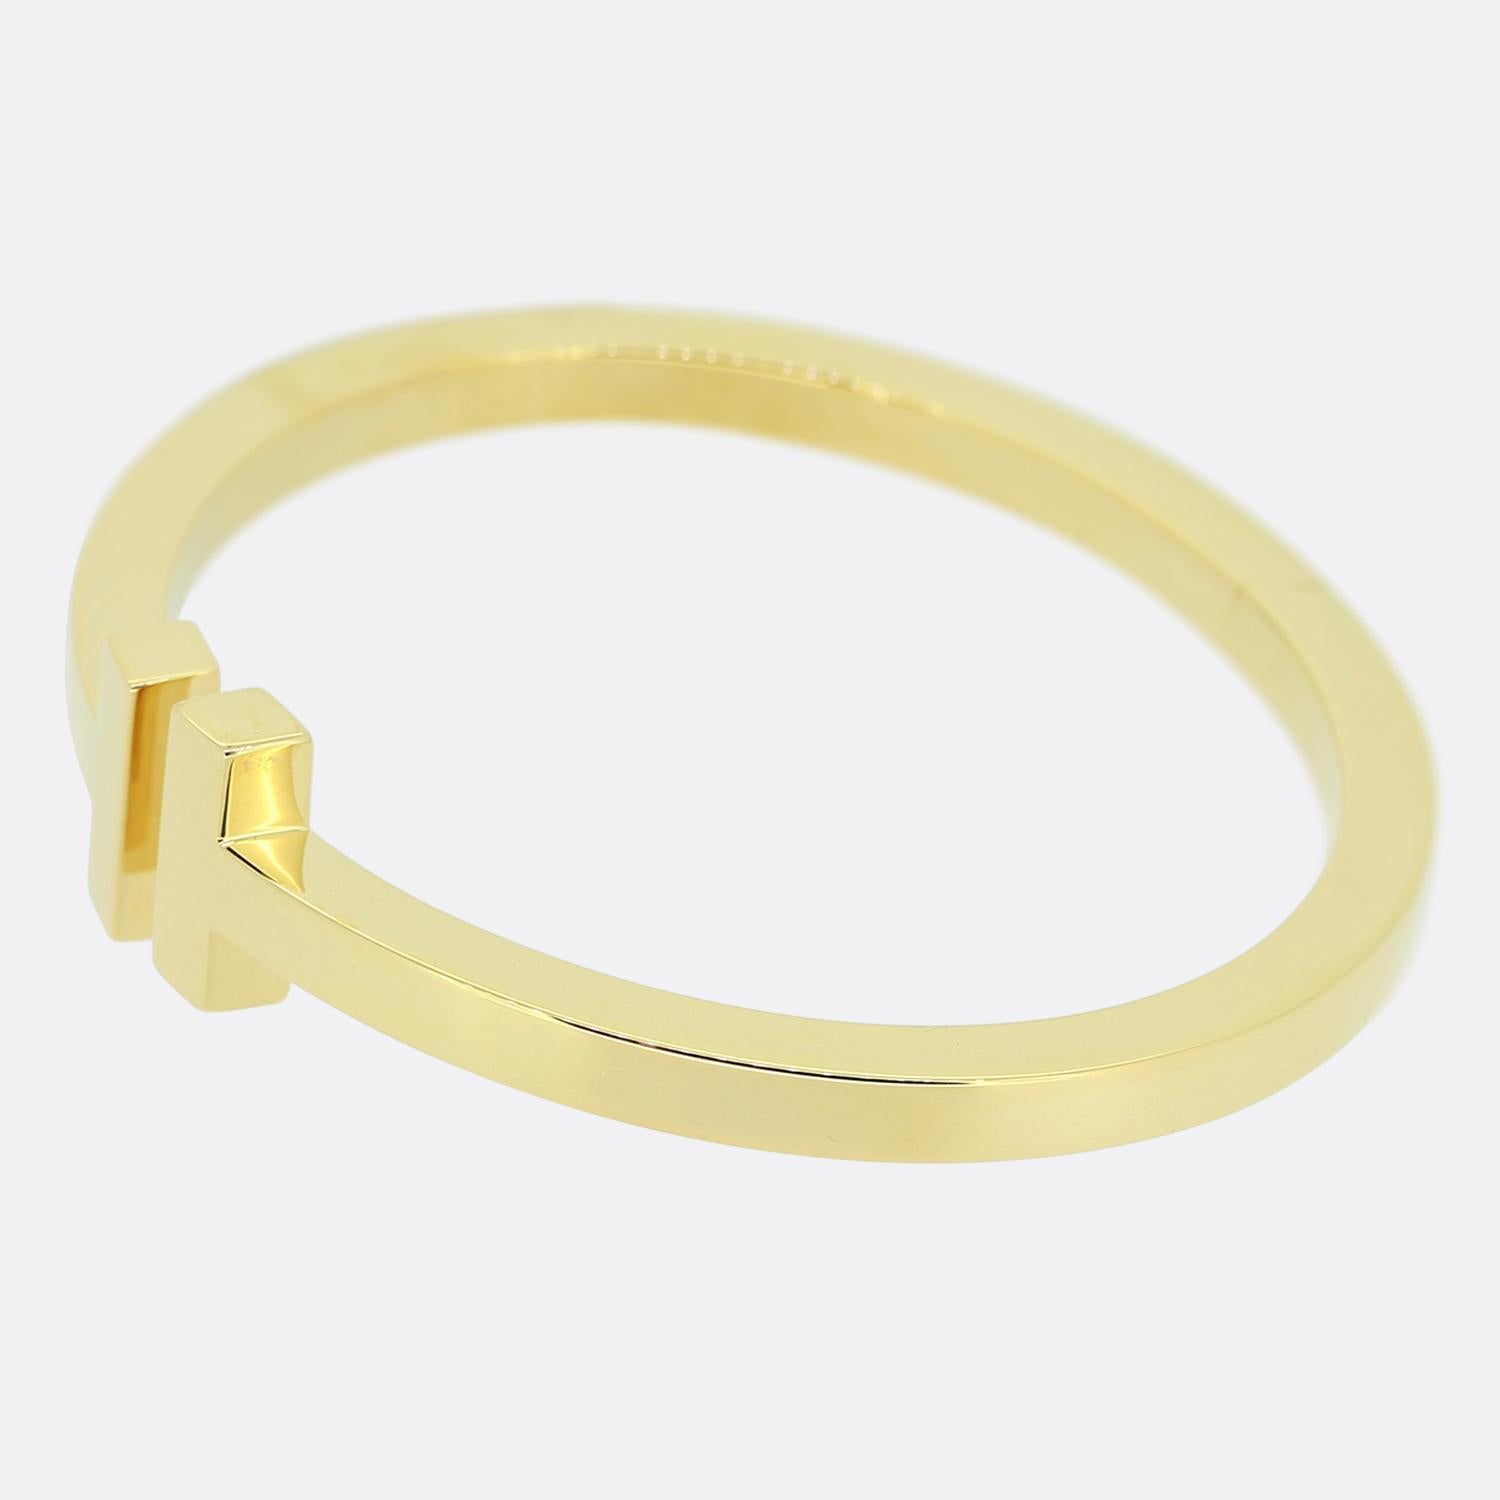 Nous avons ici un magnifique bracelet du créateur de bijoux de renommée mondiale, Tiffany & Co. Issu de la collection Tiffany T, cet élégant bracelet en or jaune 18 ct présente le motif en T emblématique, rehaussé d'une finition polie unie et d'un